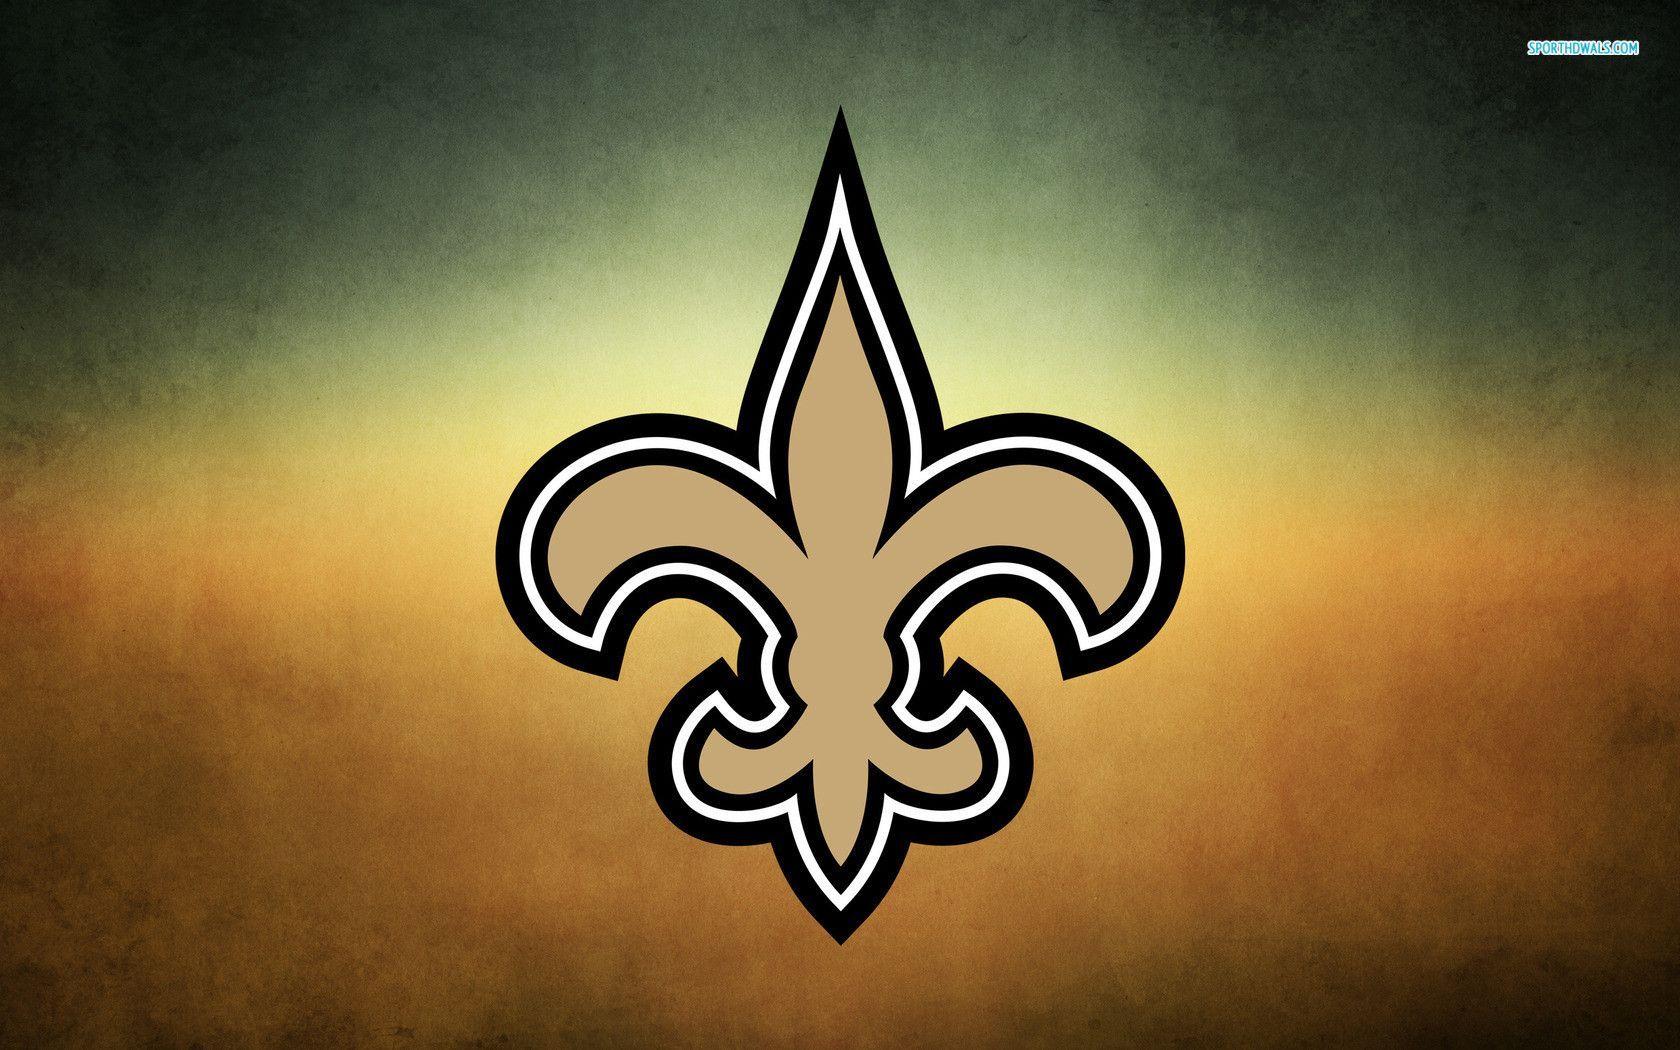 New Orleans Saints wallpaper #